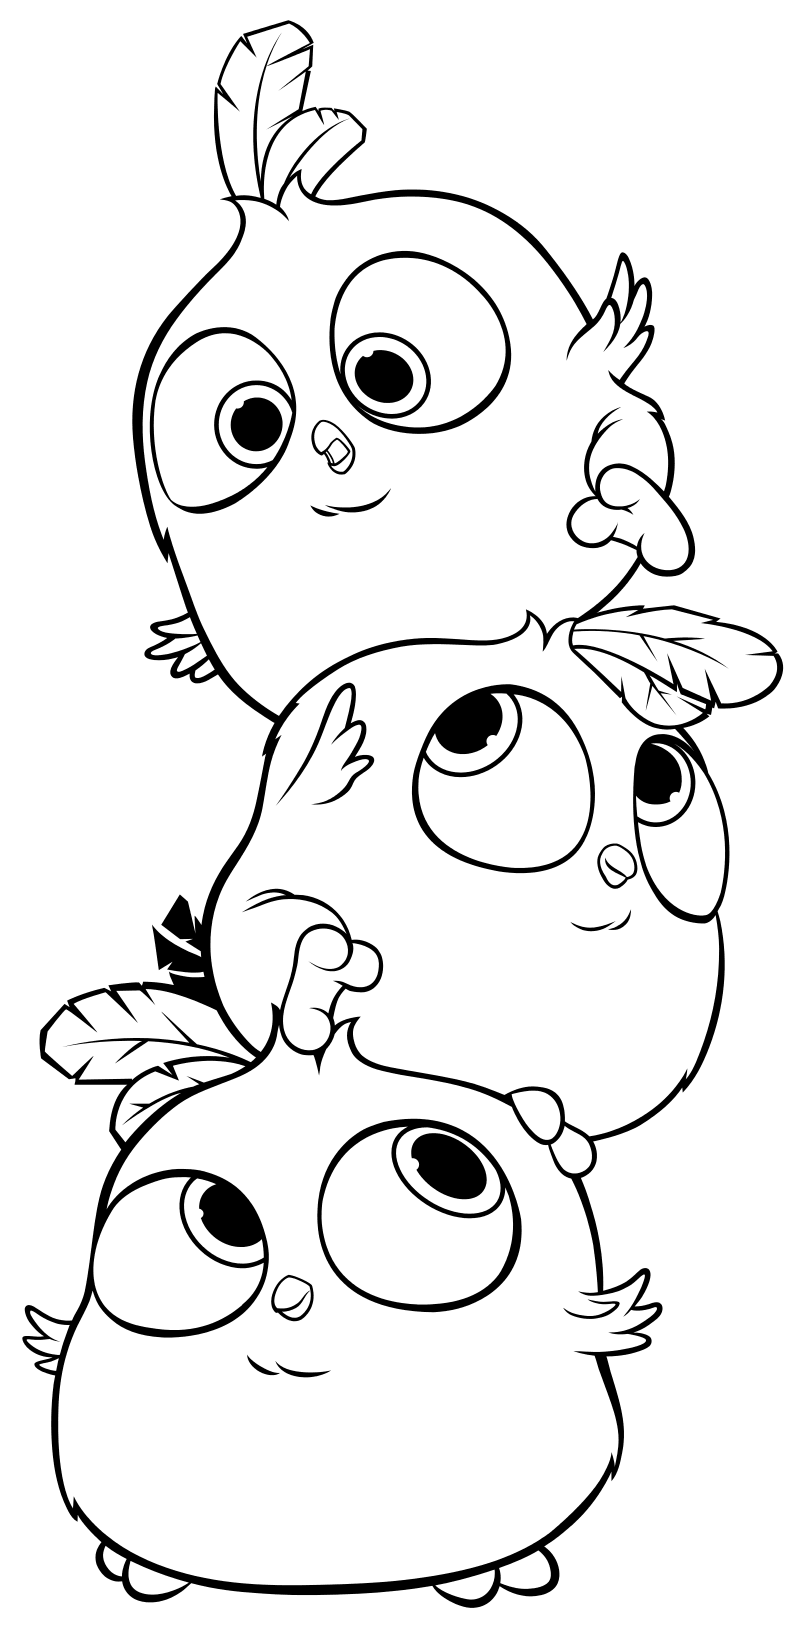 Раскраска - Angry Birds в кино - Синяя троица